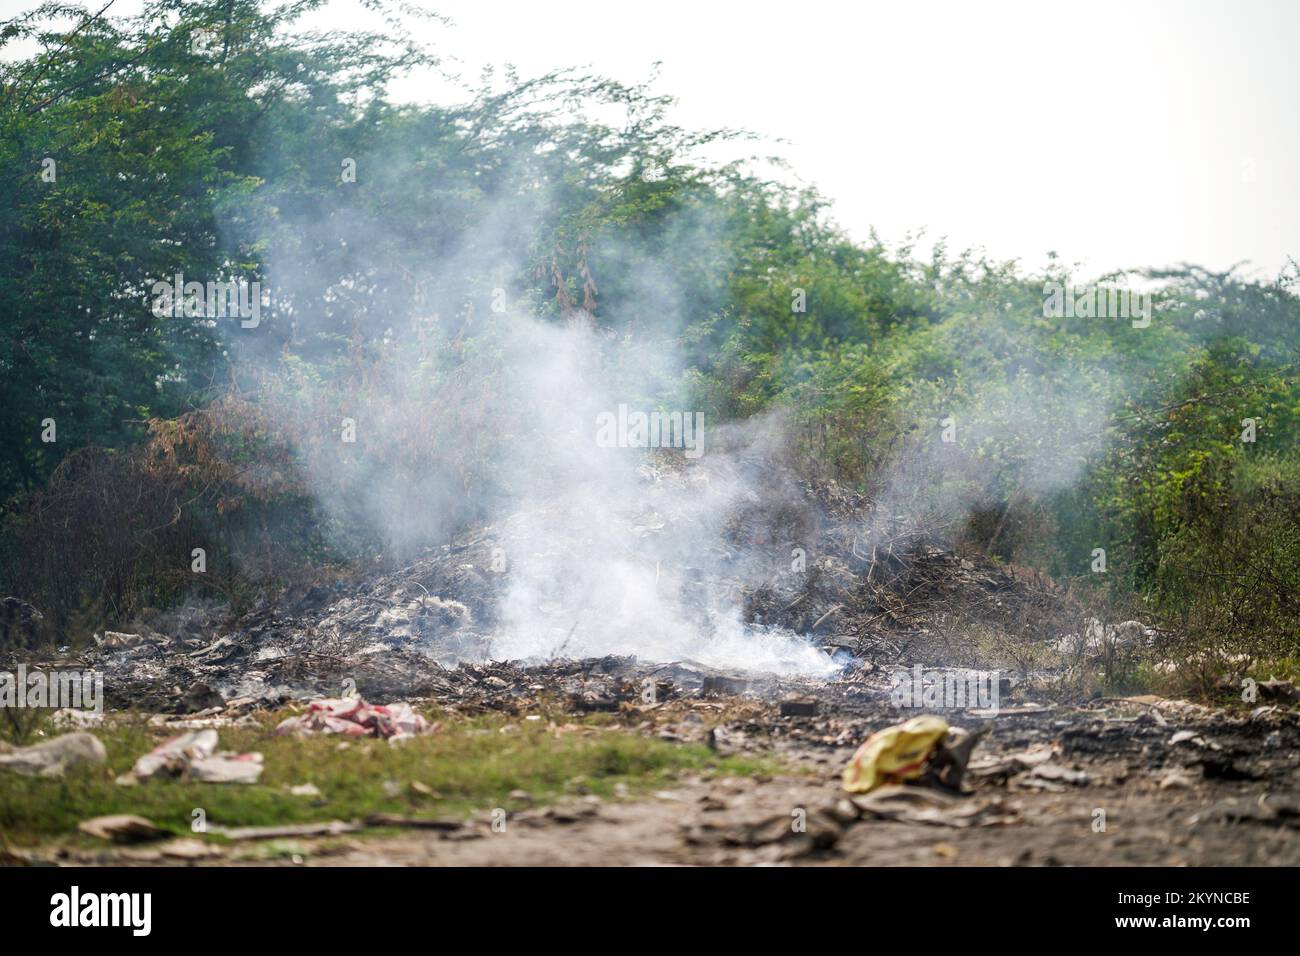 Rifiuti che scaricano e bruciano luogo che genera inquinamento di aria da fumo, giorno di controllo di inquinamento, inquinamento di terra, Raipur, india, Concetto di inquinamento Foto Stock